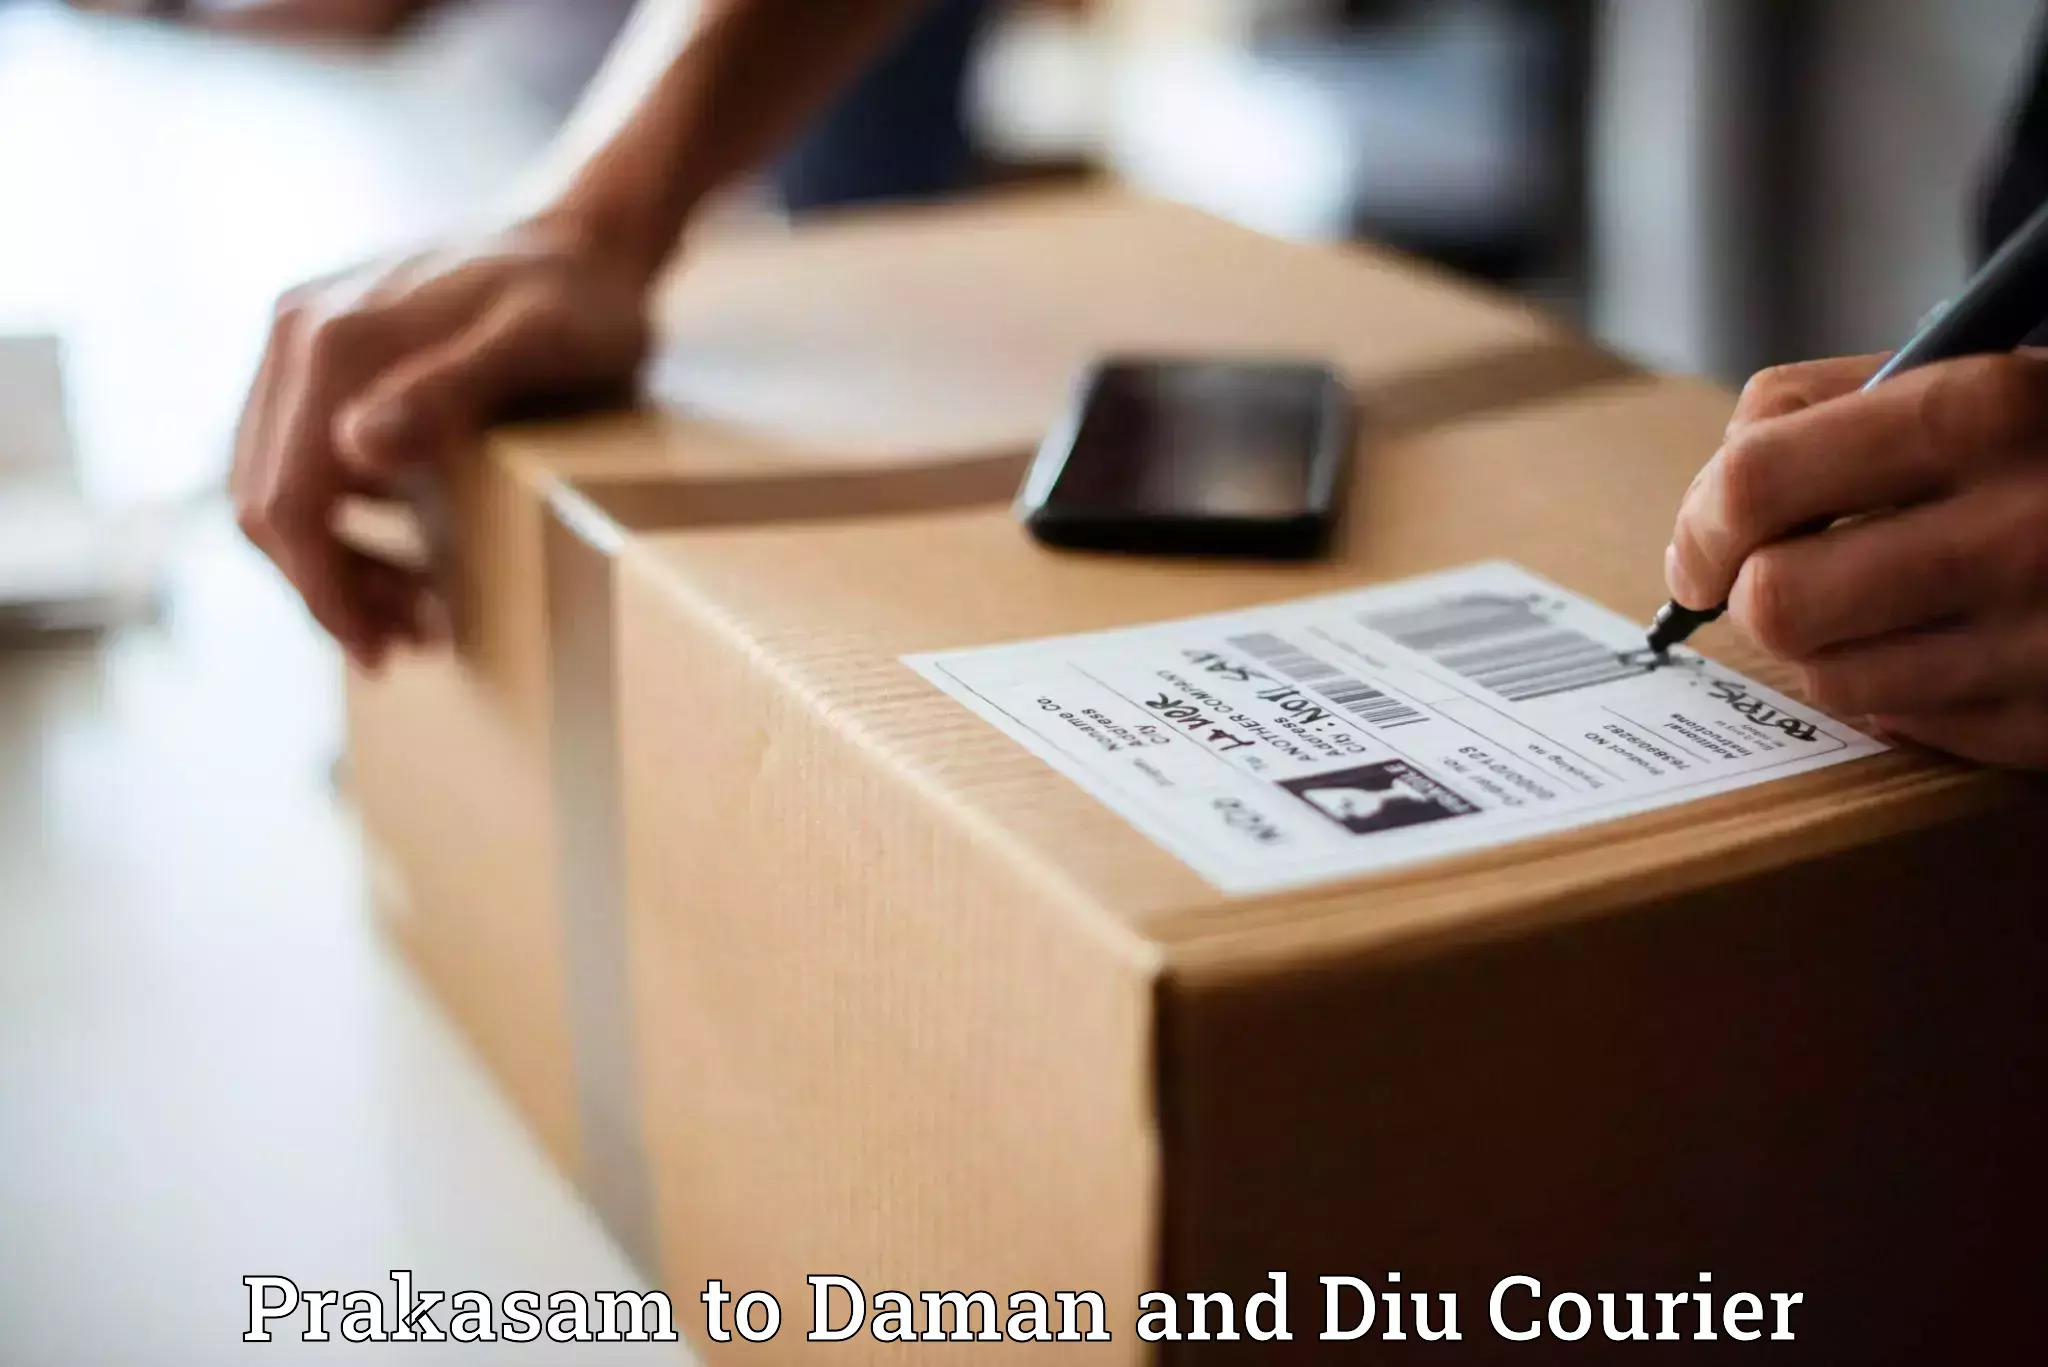 Courier service comparison Prakasam to Diu